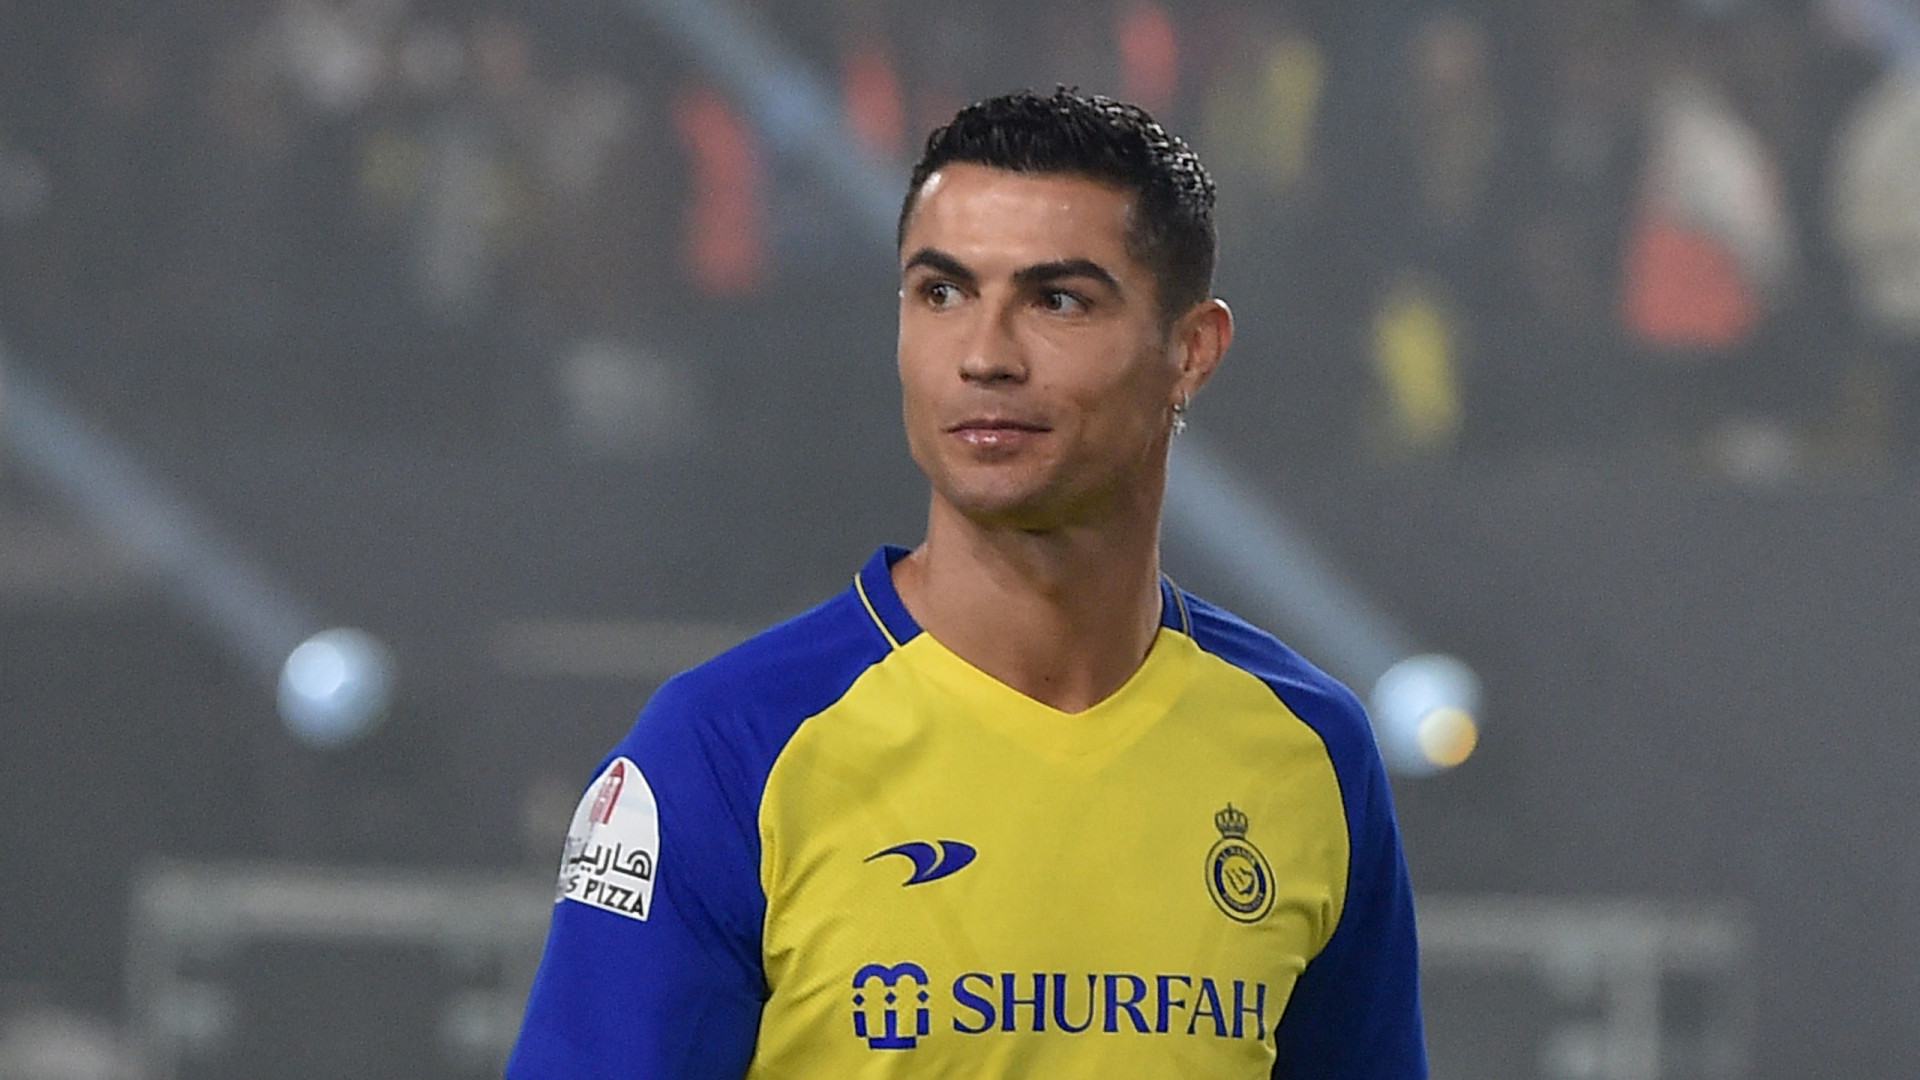 Cristiano Ronaldo fecha com Al Nassr, da Arábia Saudita, crava jornalista